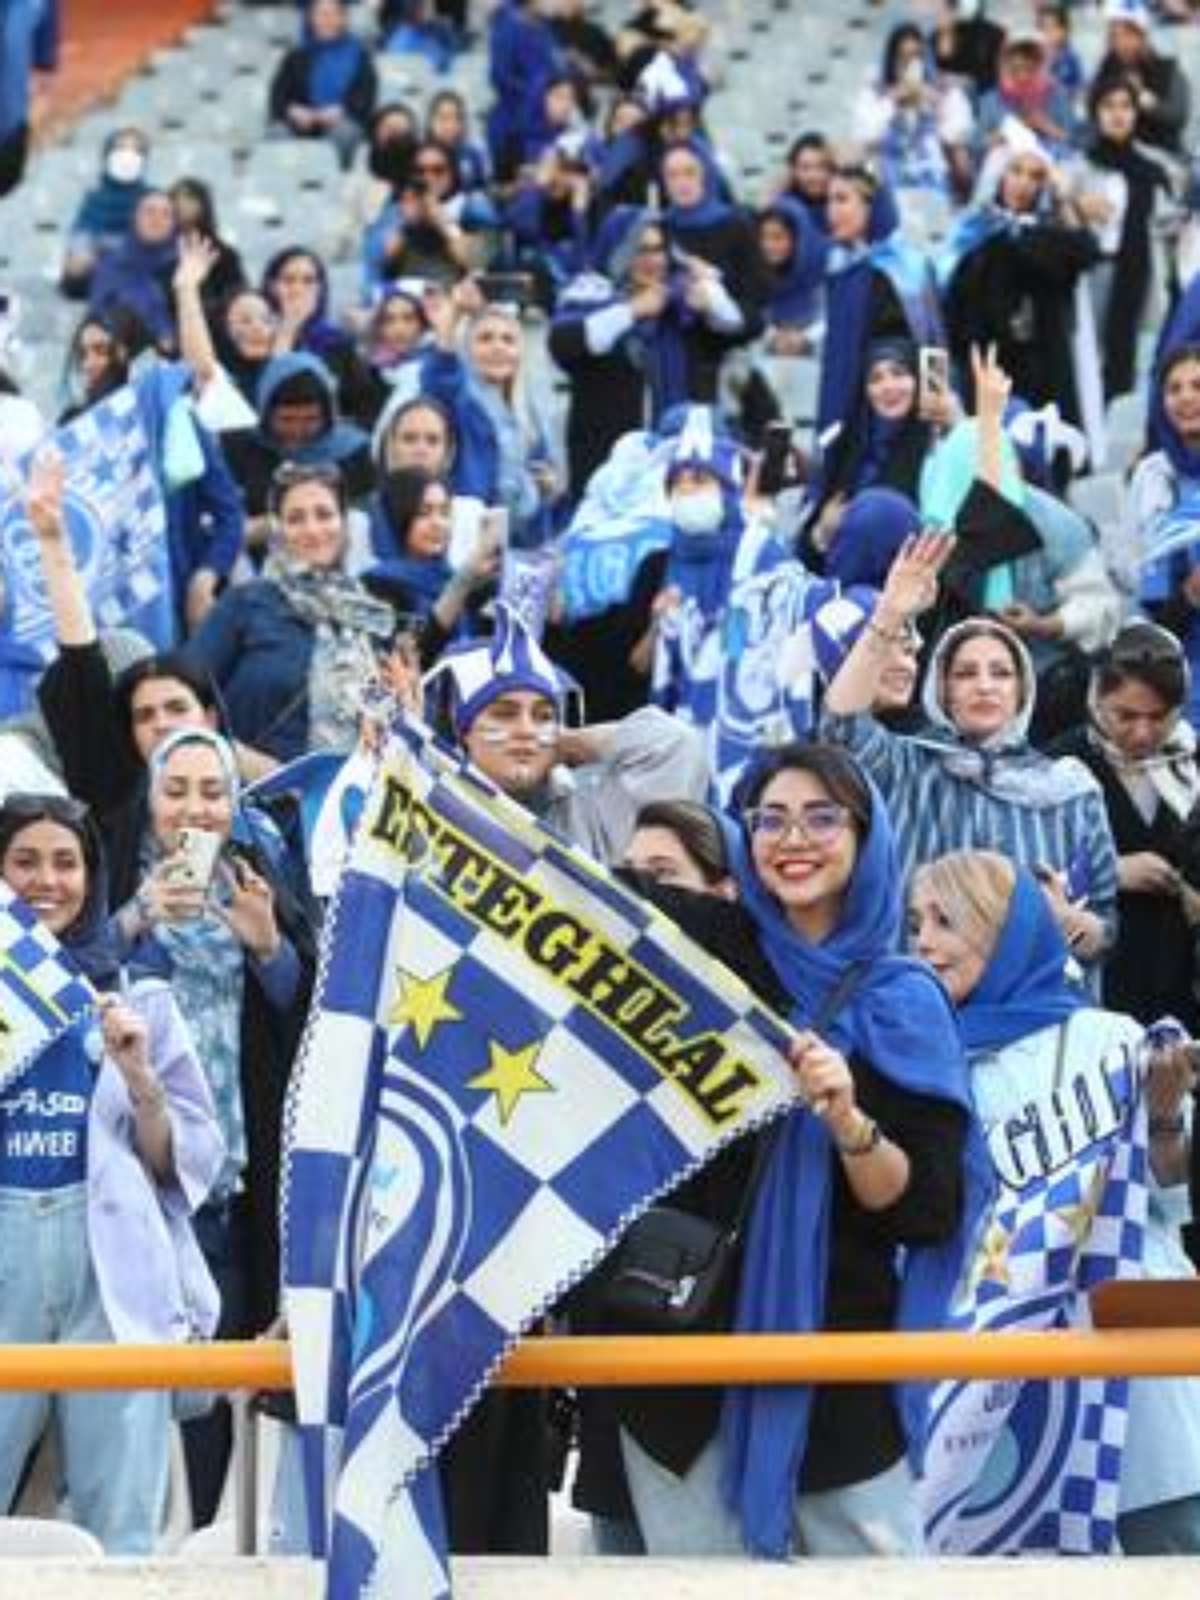 Pela primeira vez em 40 anos, mulheres assistem partida de futebol da  primeira divisão no Irã